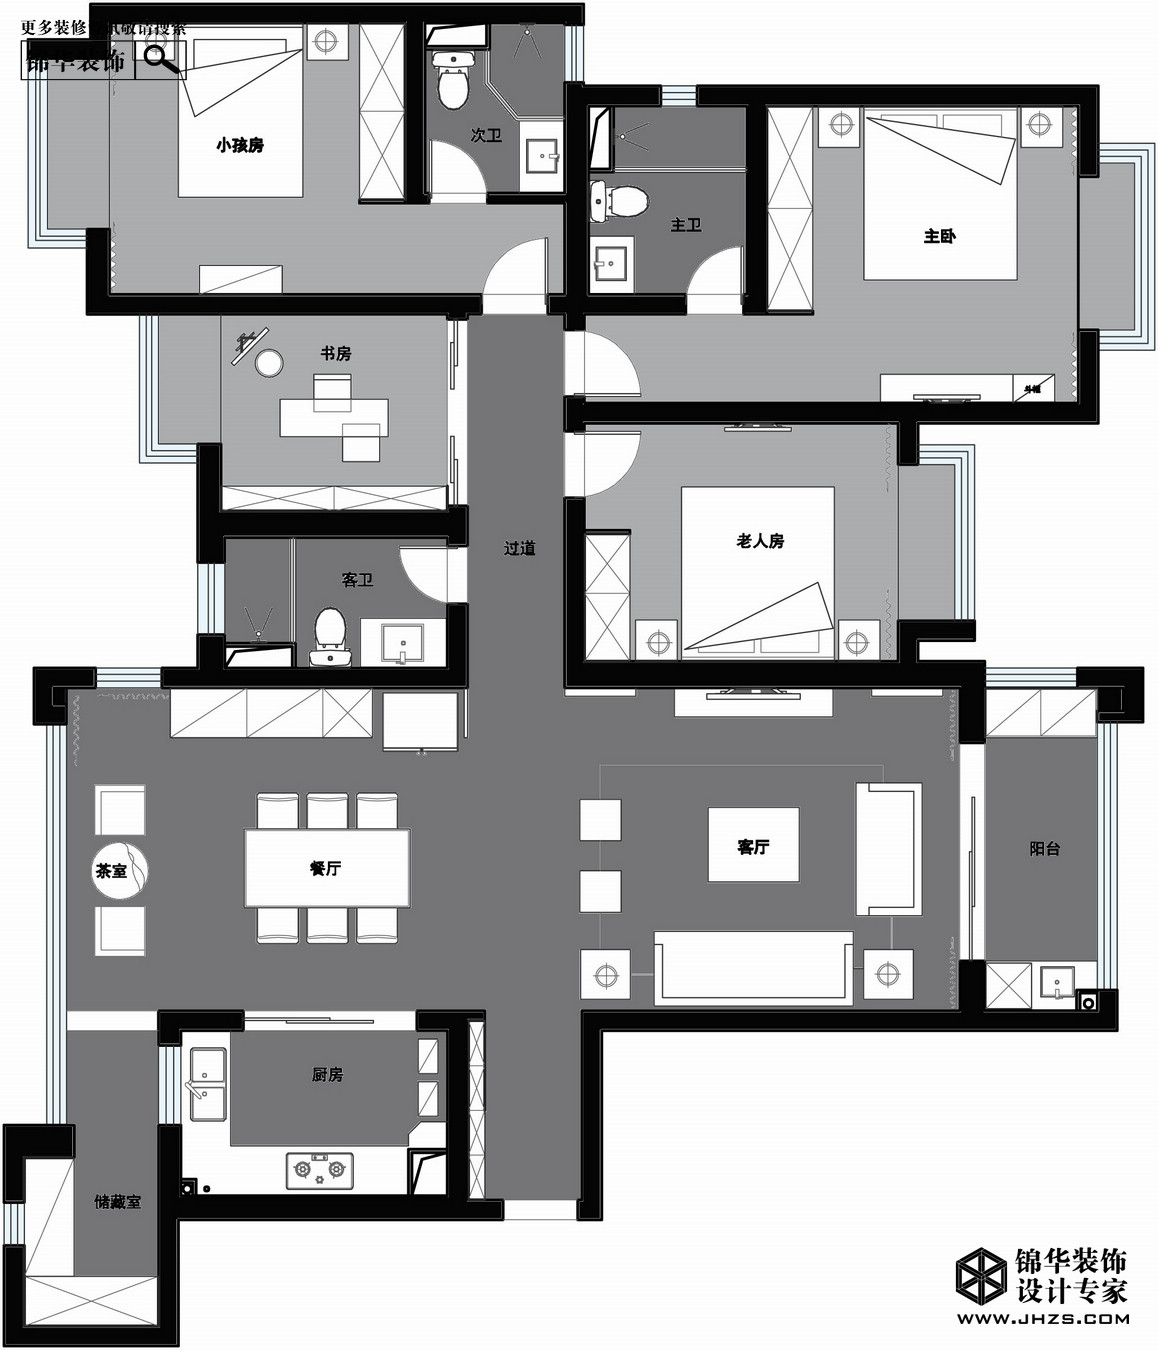 現代簡約-雅居樂濱江國際-三室兩廳-197㎡裝修-三室兩廳-現代簡約